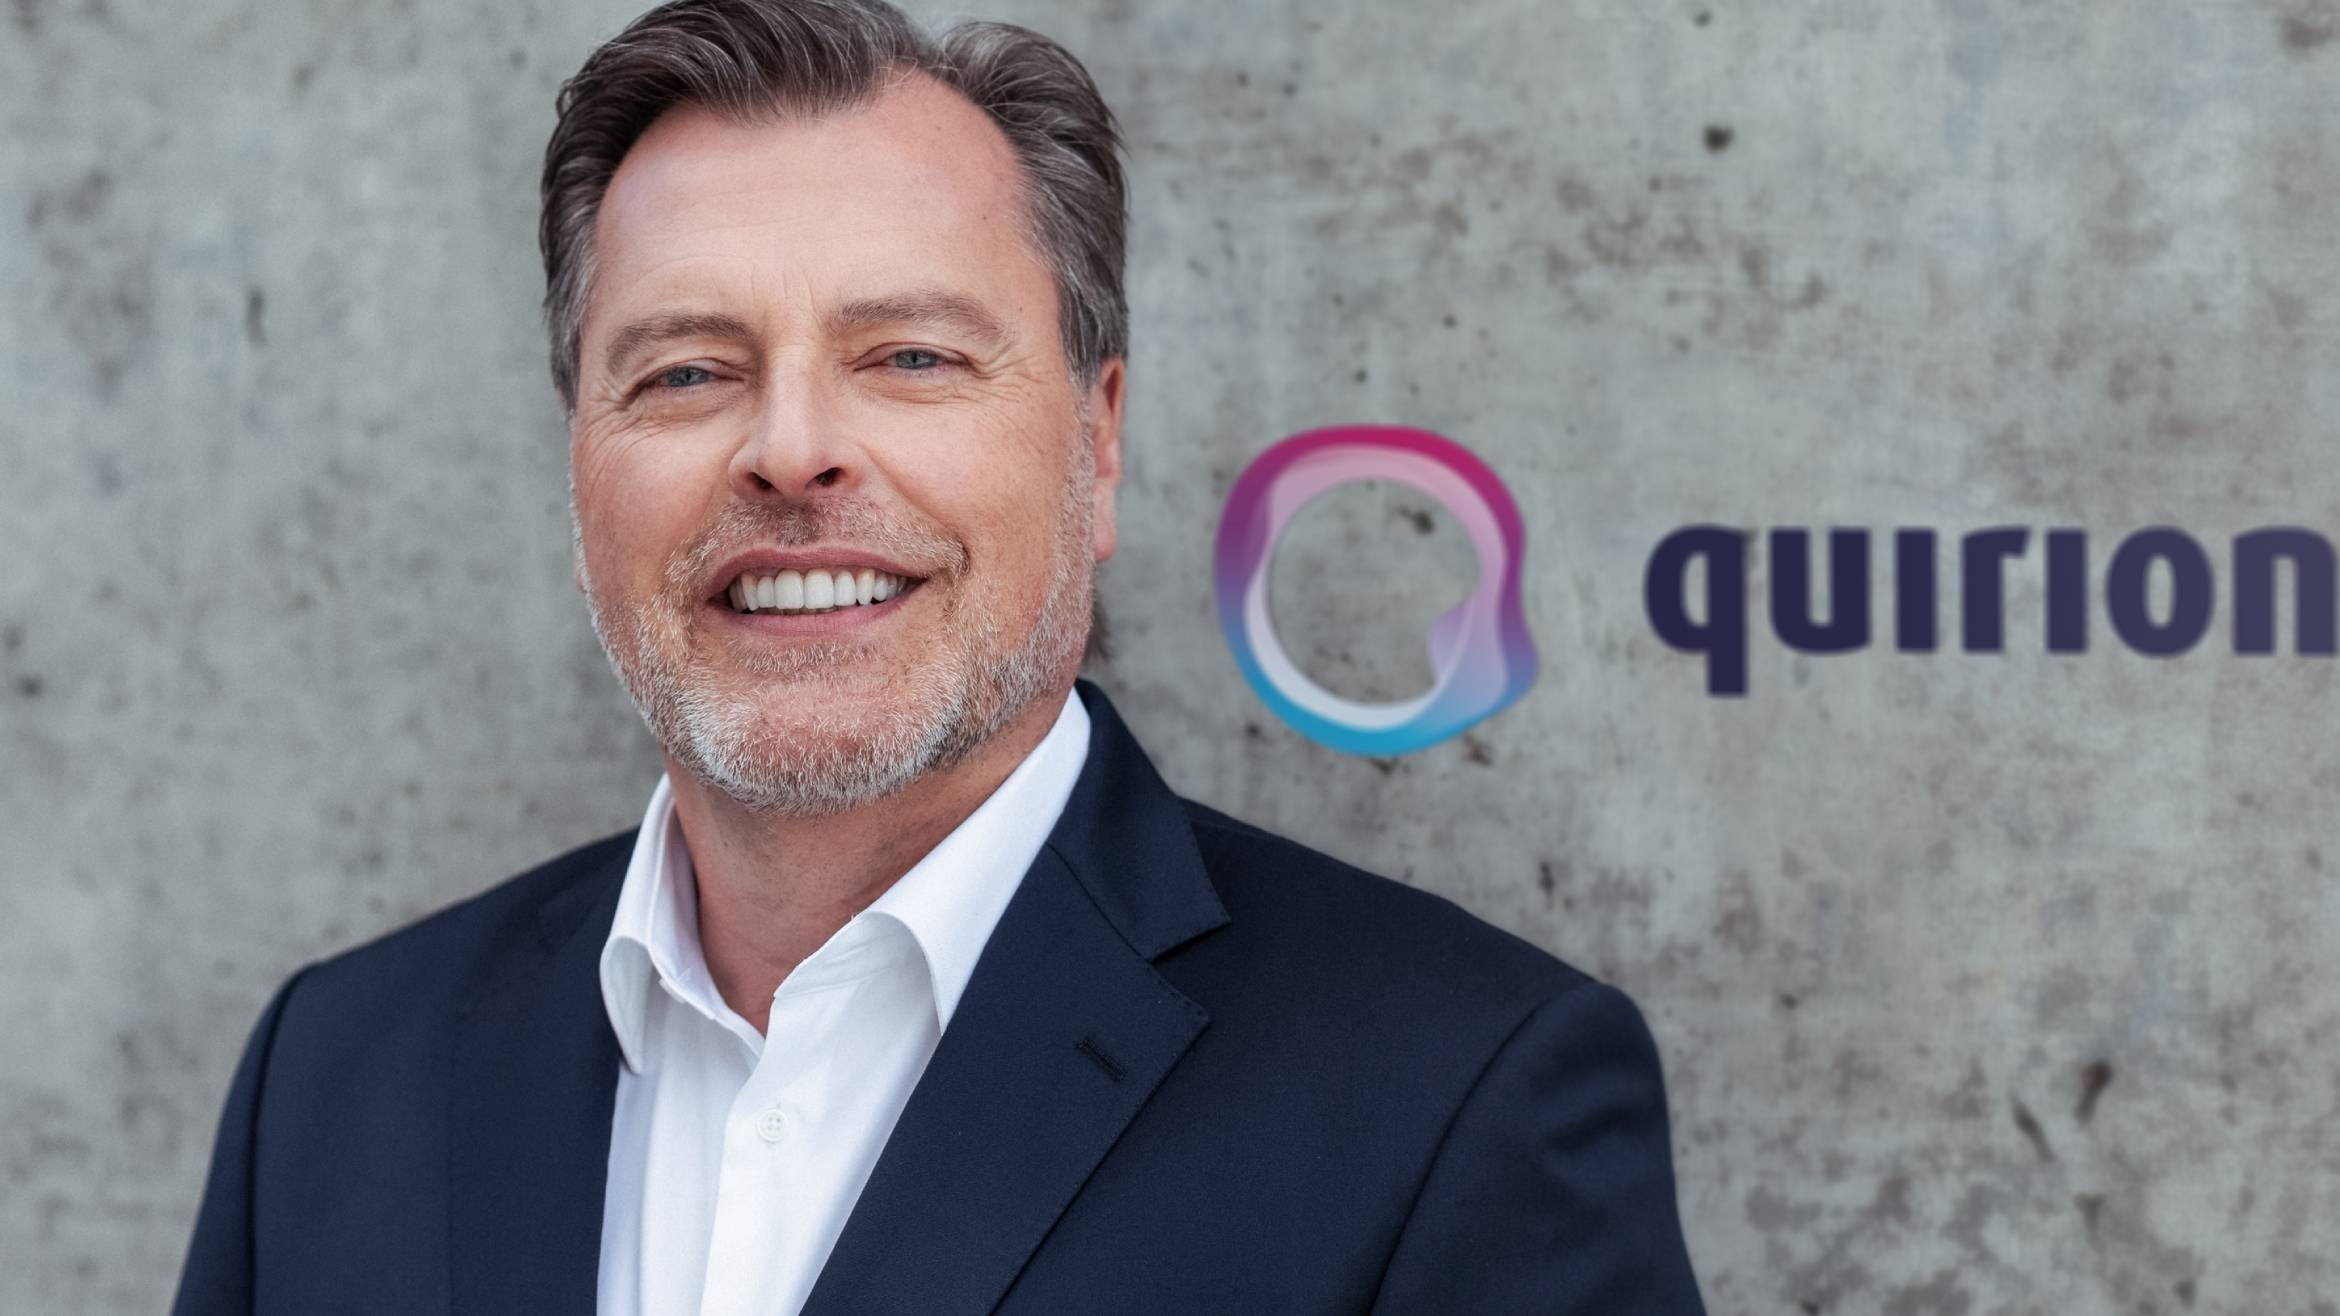 Quirion-CEO Martin Daut, gönnt seiner Marke eine neue Digital-Kampagne 